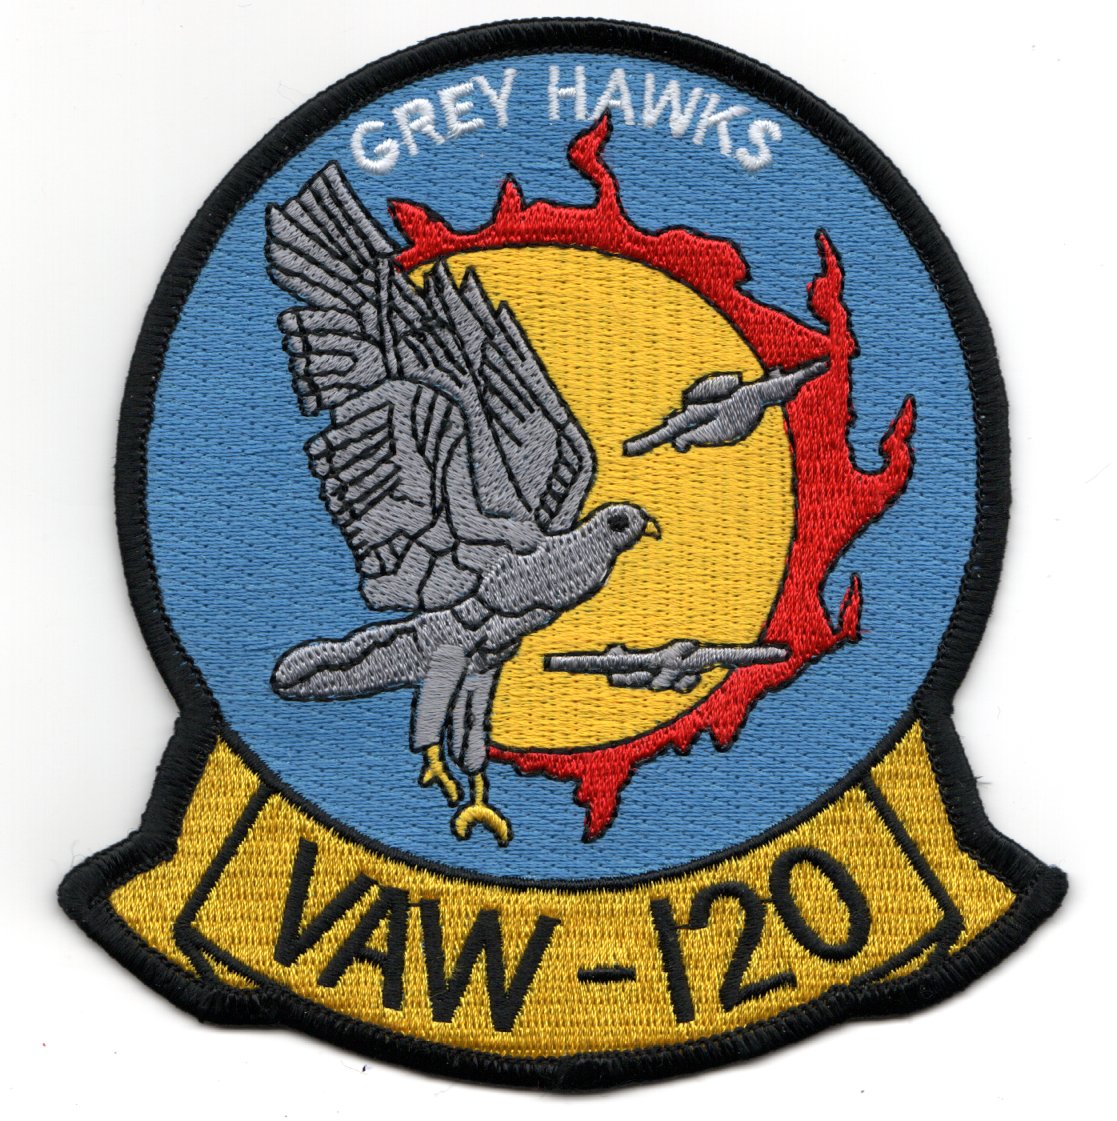 VAW-120 E-2C HAWKEYE SHOULDER PATCH 